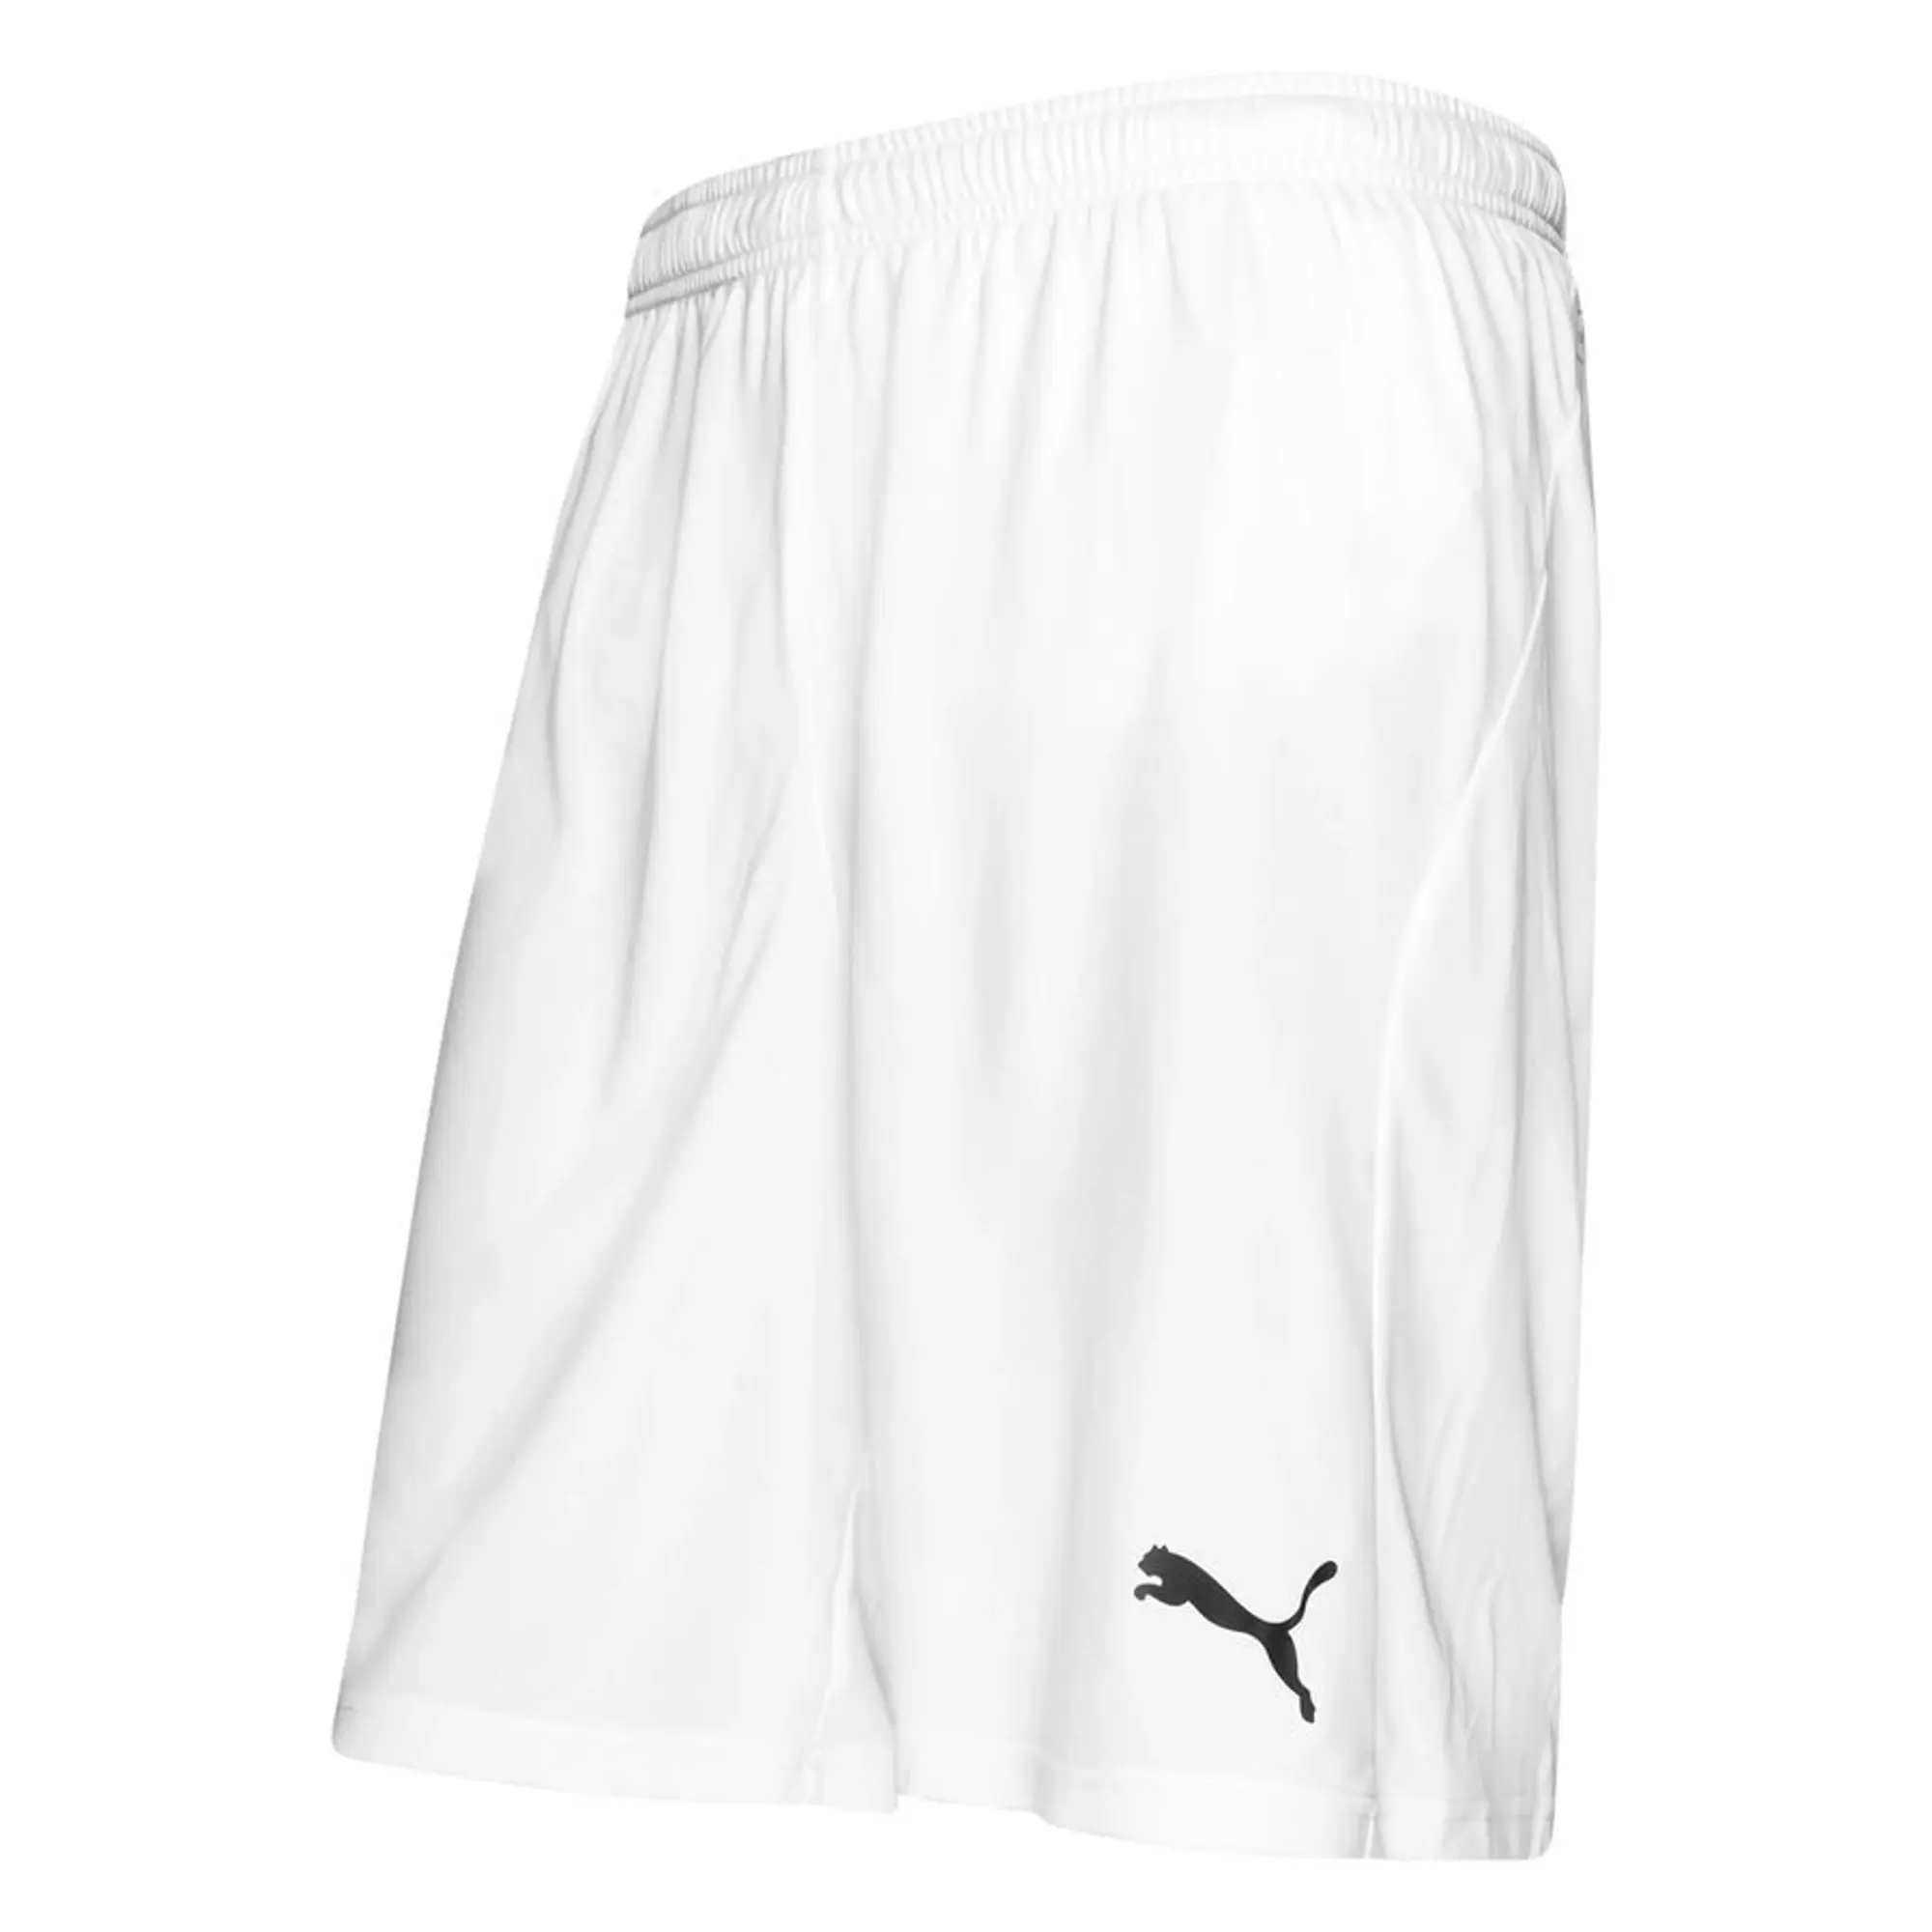 Puma Shorts Liga Core - White